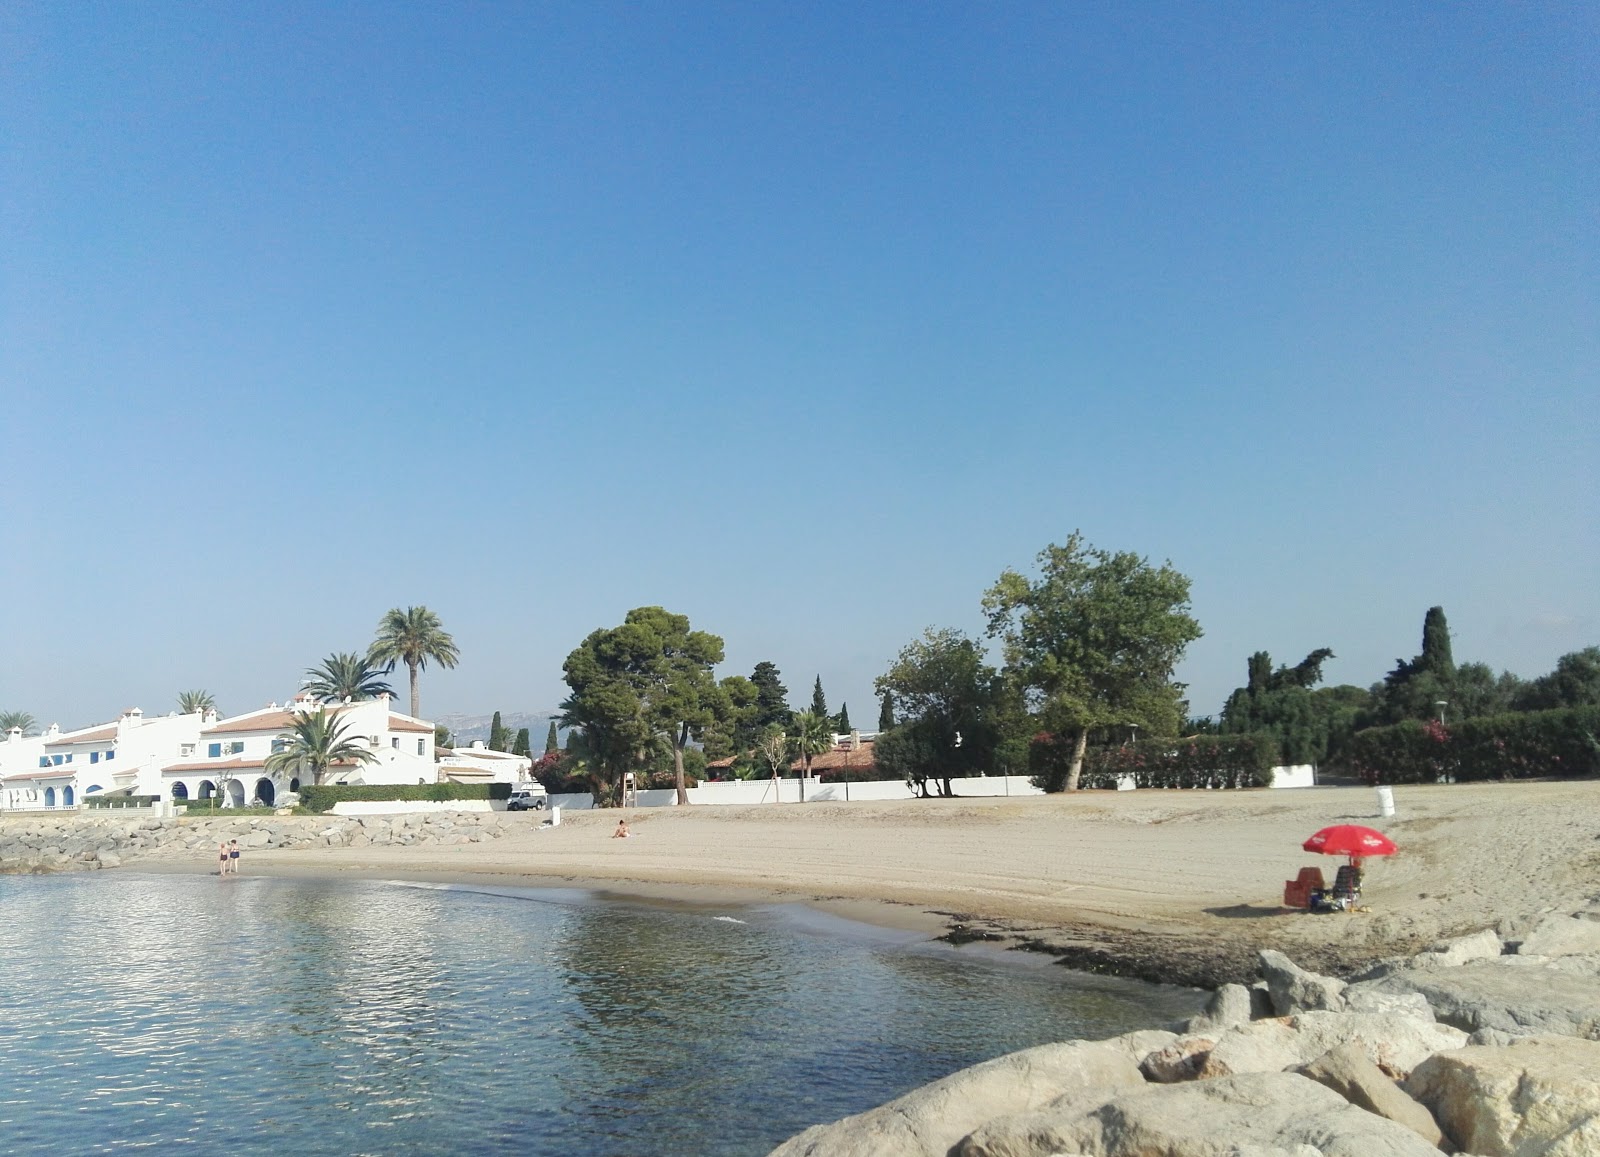 Playa de La Pixerota'in fotoğrafı doğrudan plaj ile birlikte